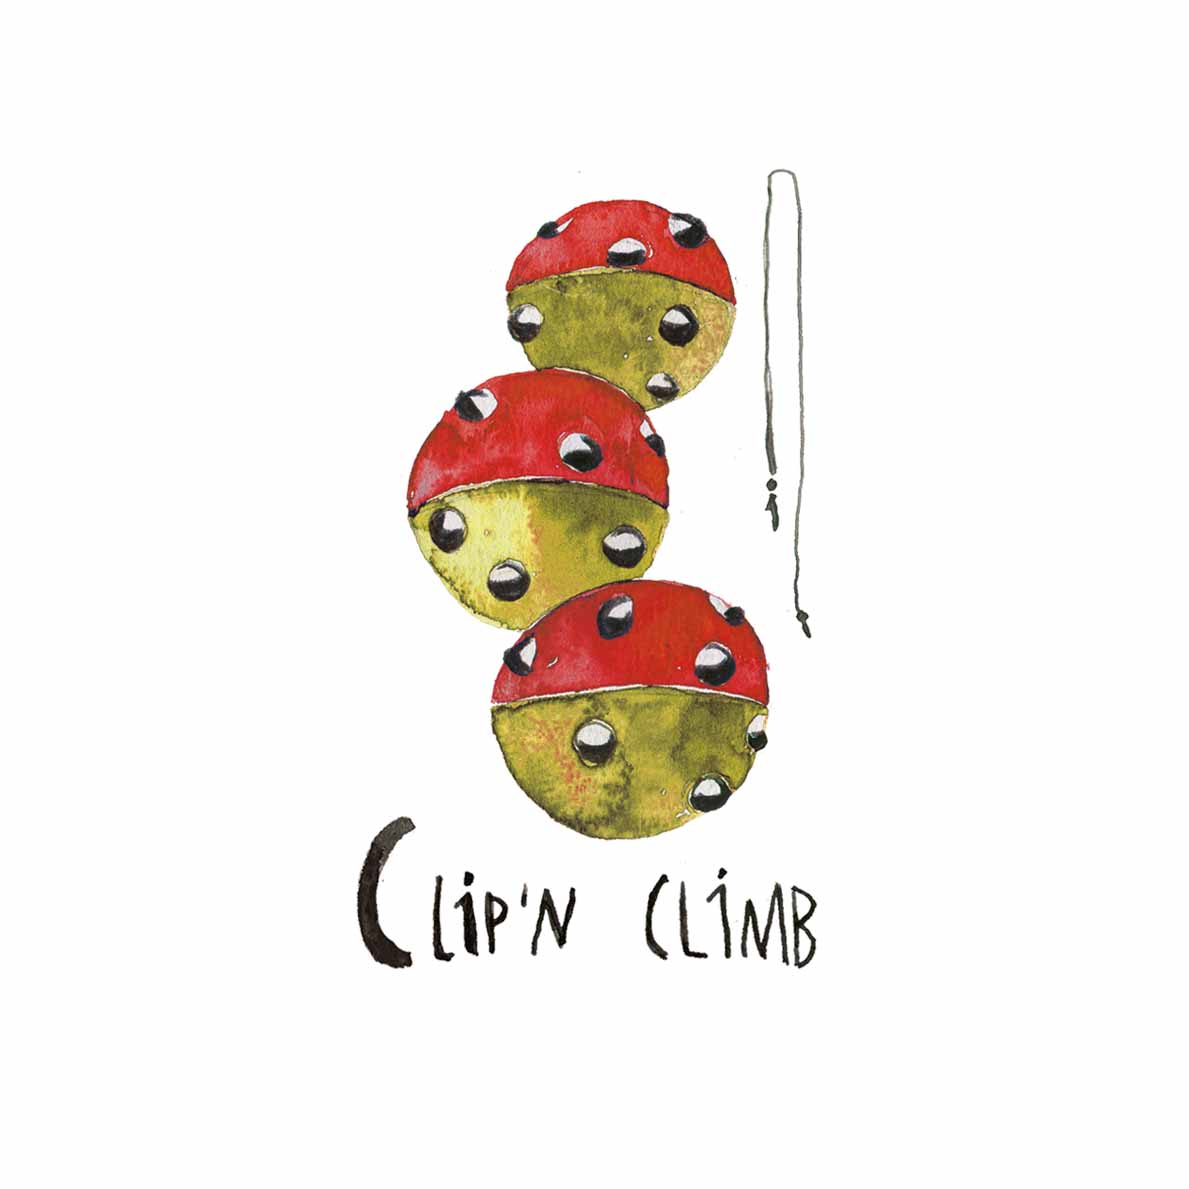 C clip#n climb